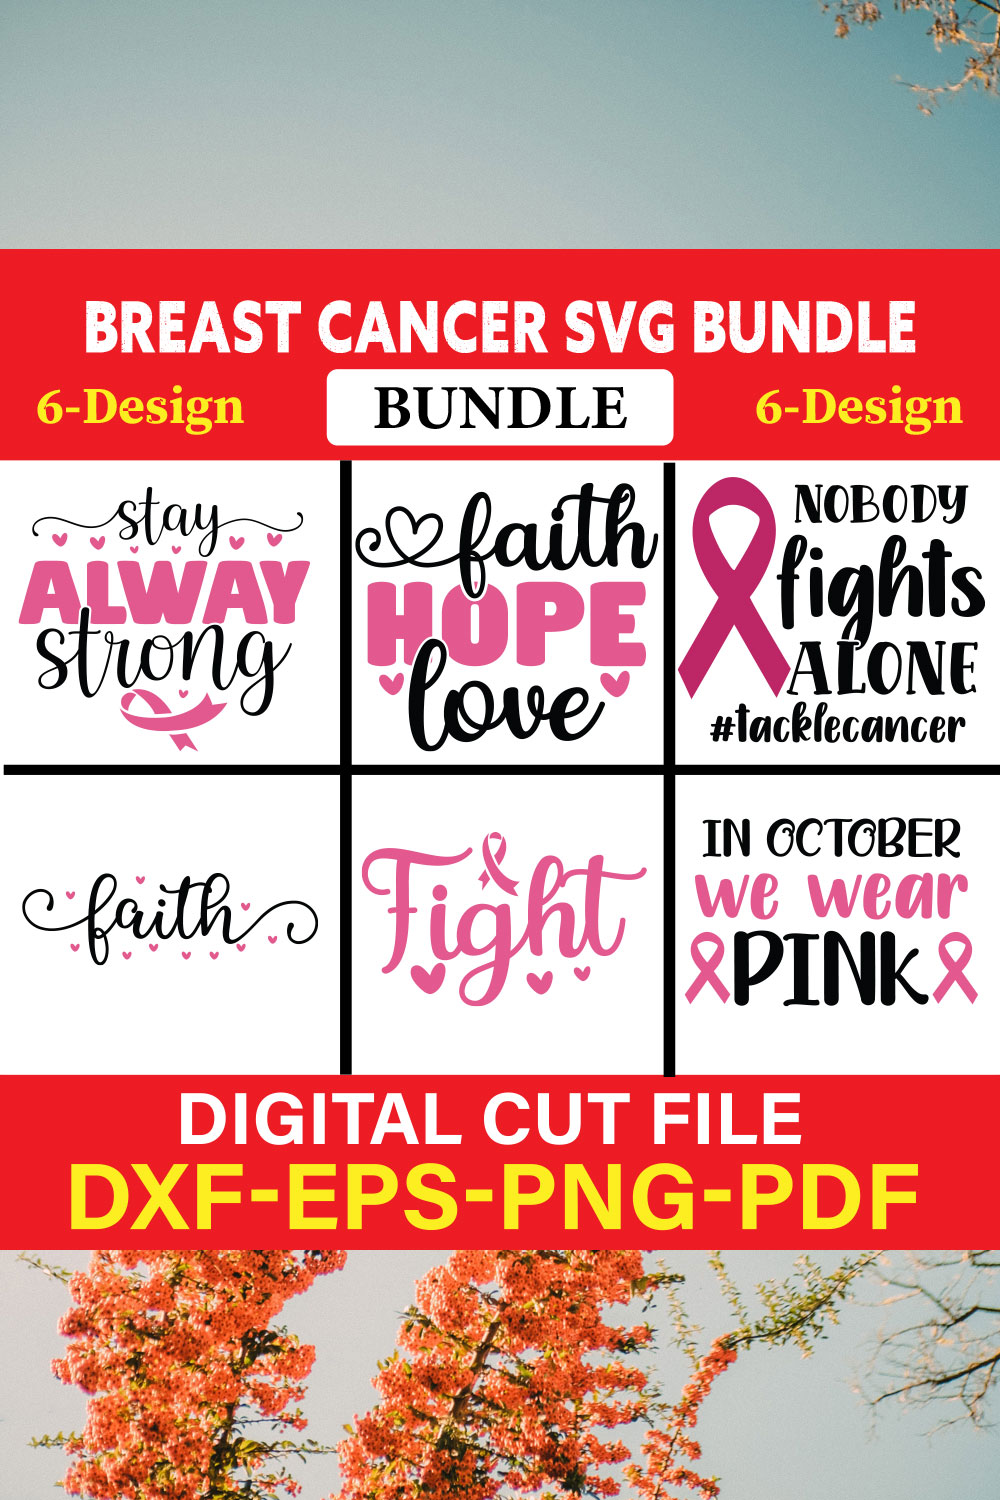 Breast Cancer SVG Bundle, Cancer SVG, Cancer Awareness, Vol-04 pinterest preview image.